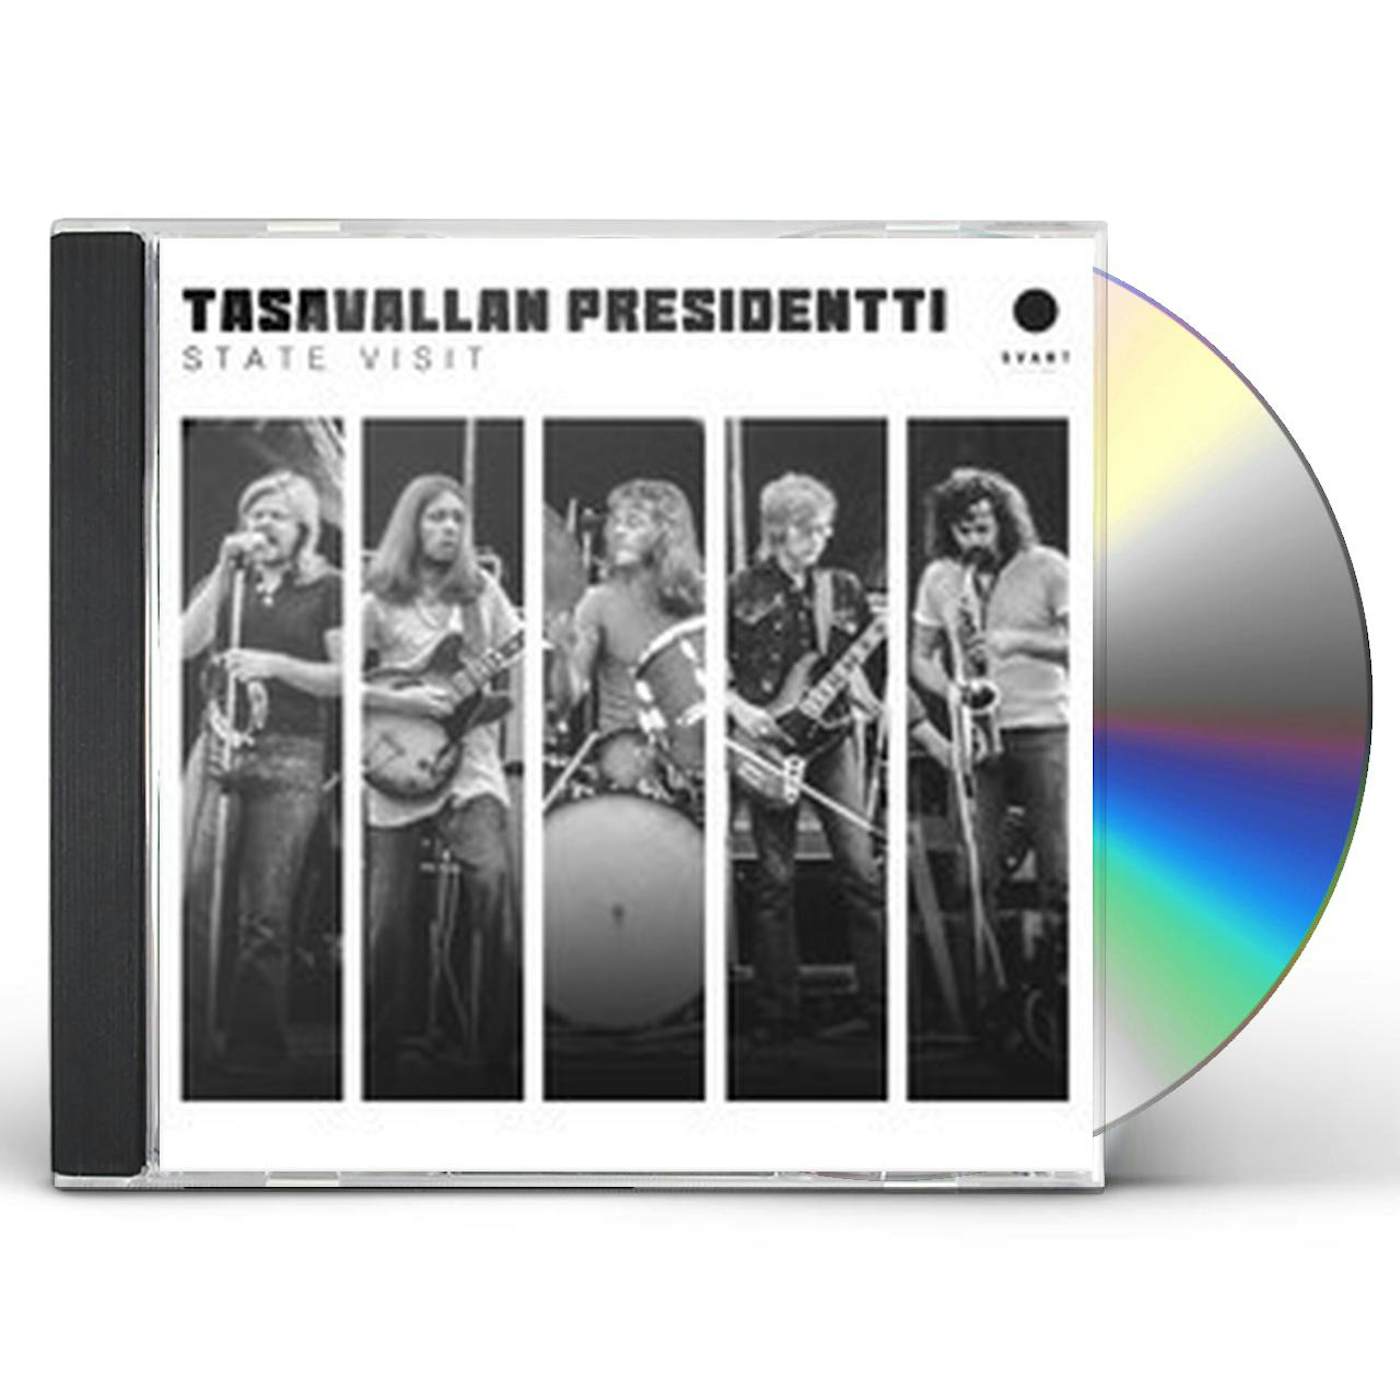 Tasavallan Presidentti STATE VISIT CD